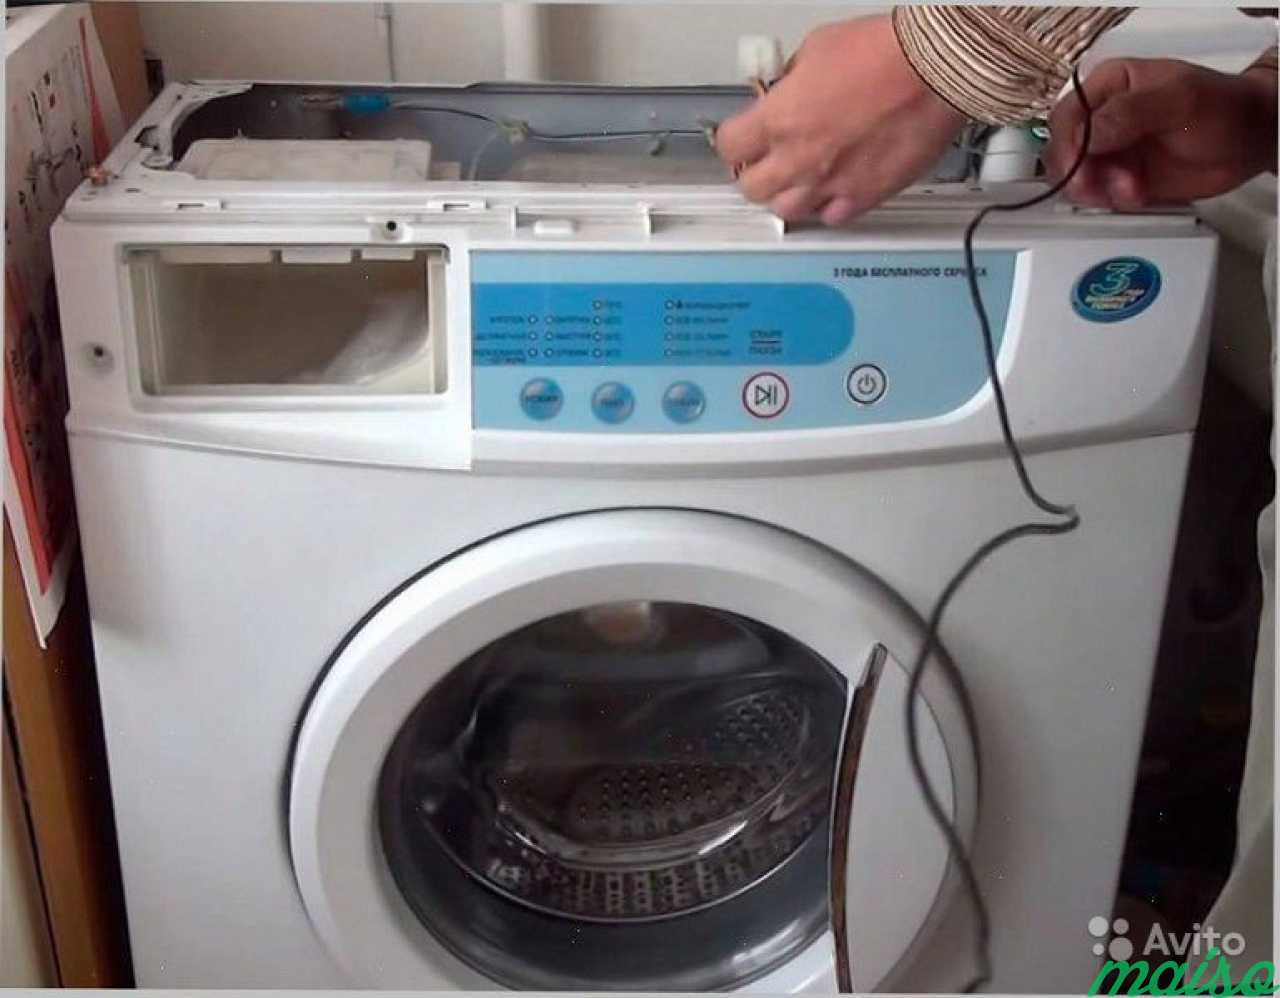 Поломка стиральной машины